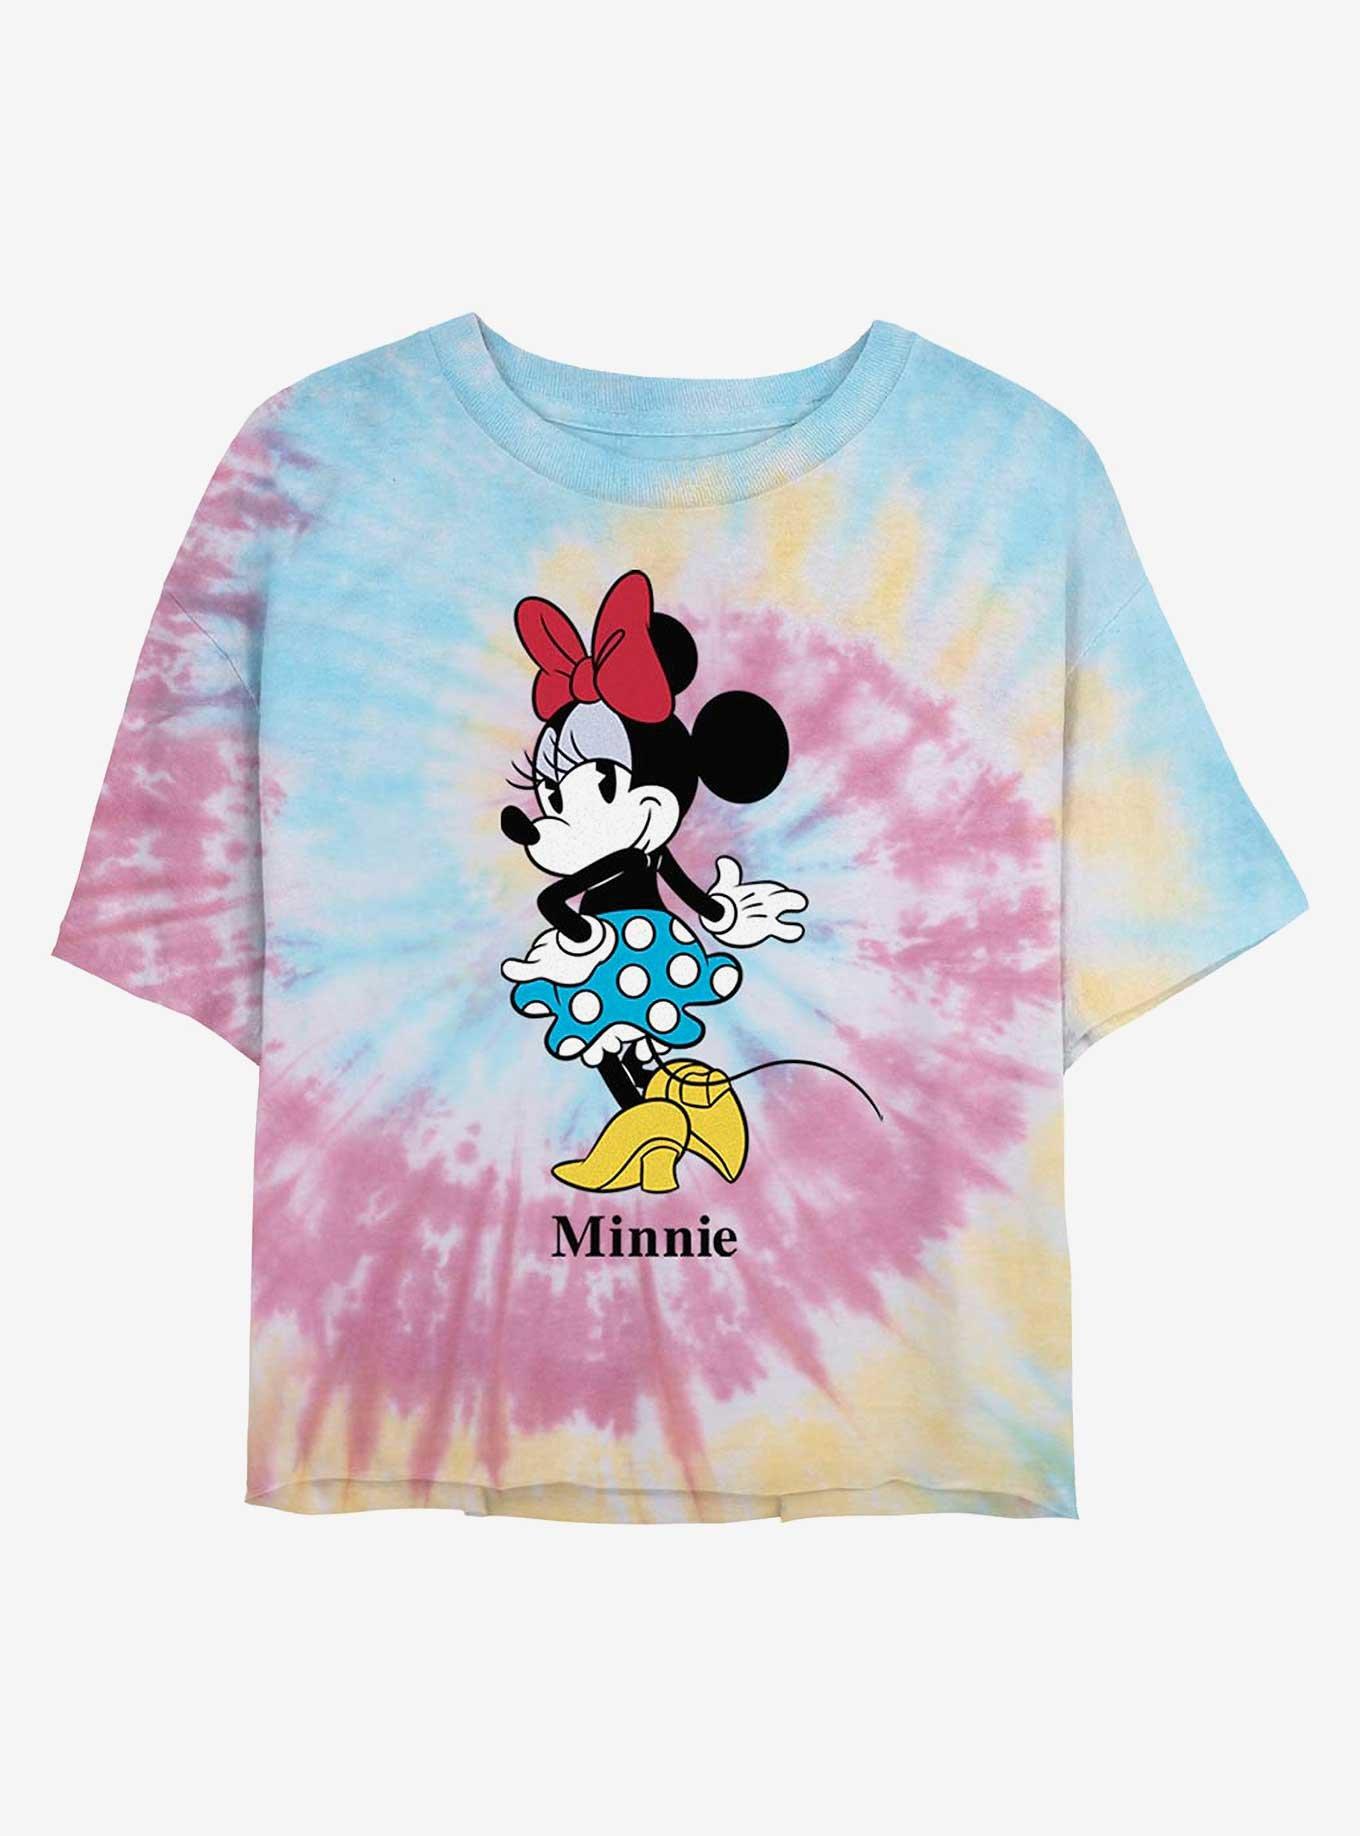 Disney Minnie Mouse Skirt Tie Dye Crop Girls T-Shirt